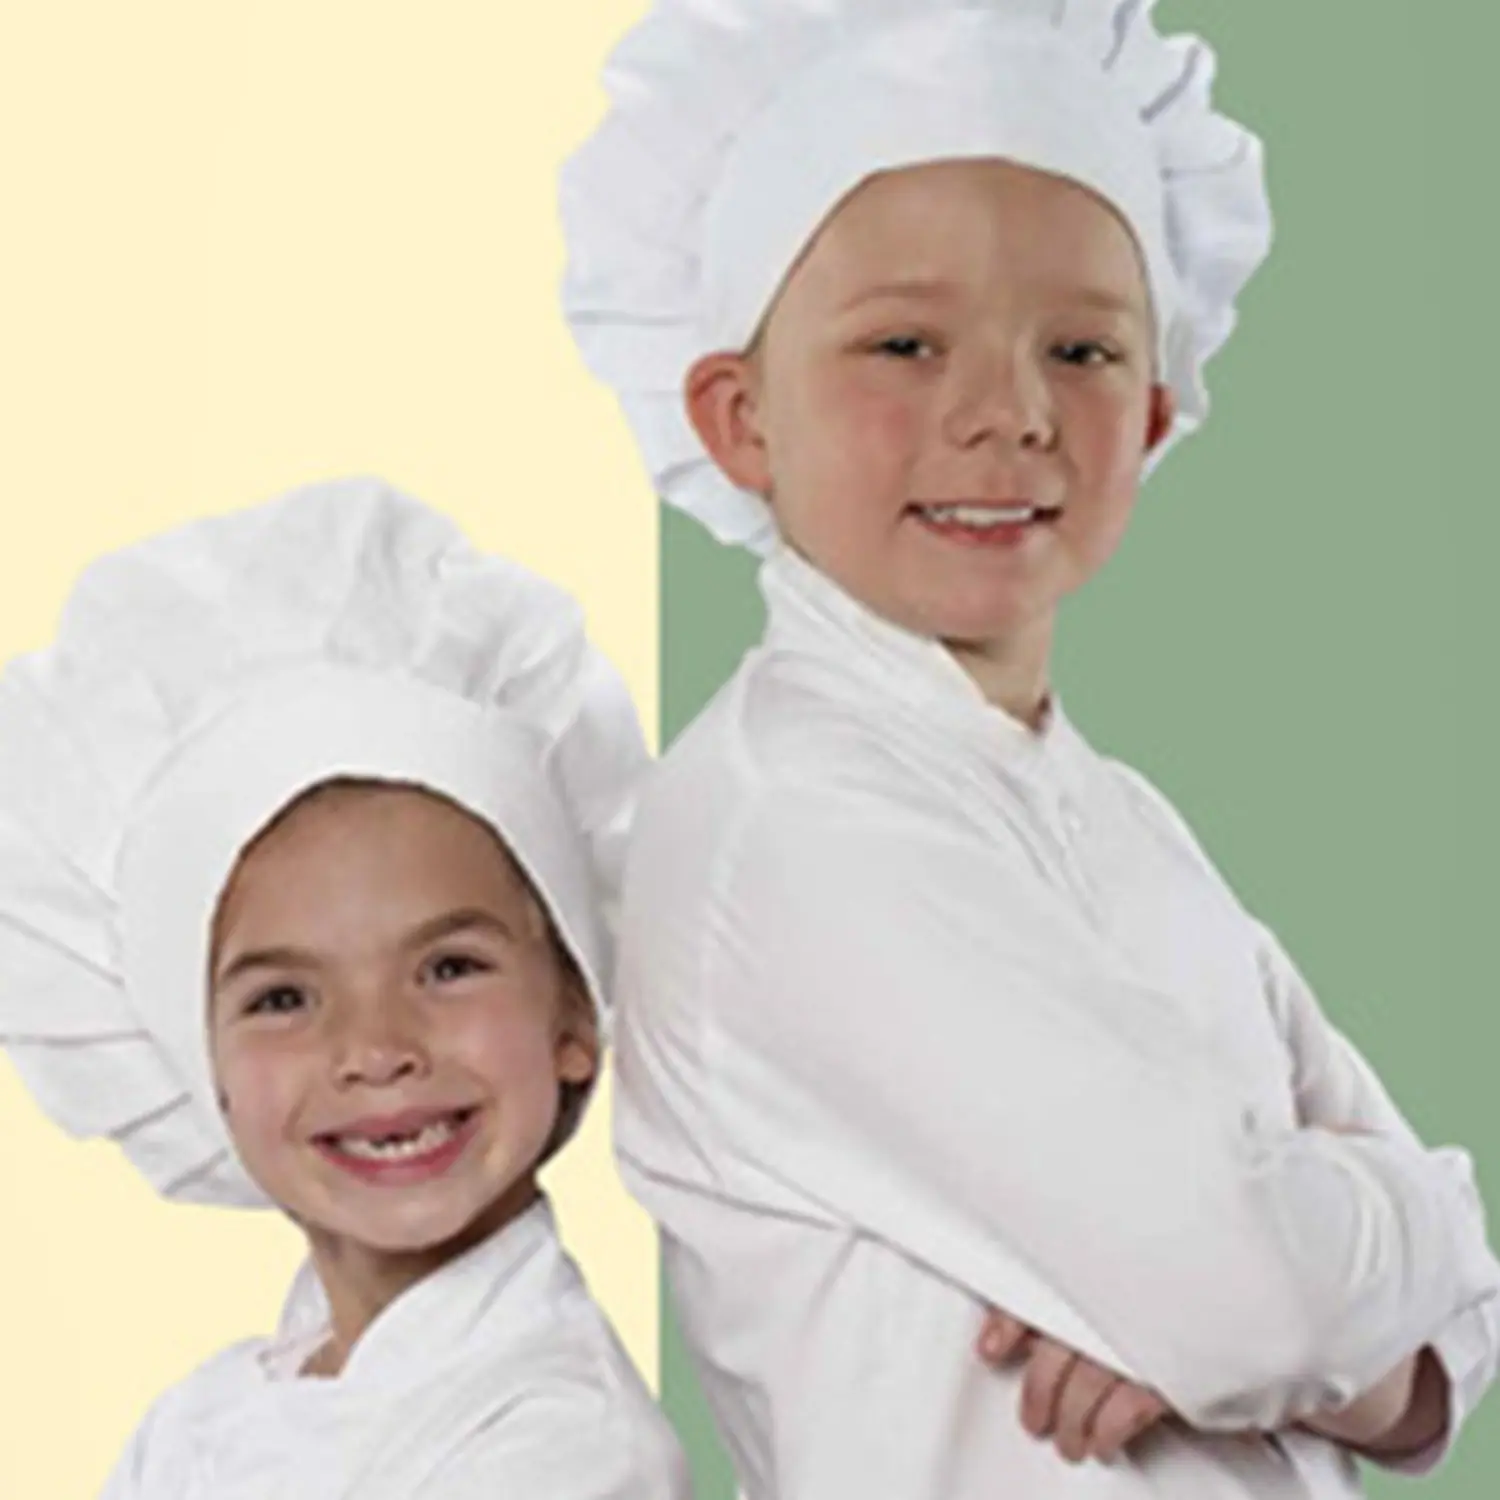 Children wearing chef uniform